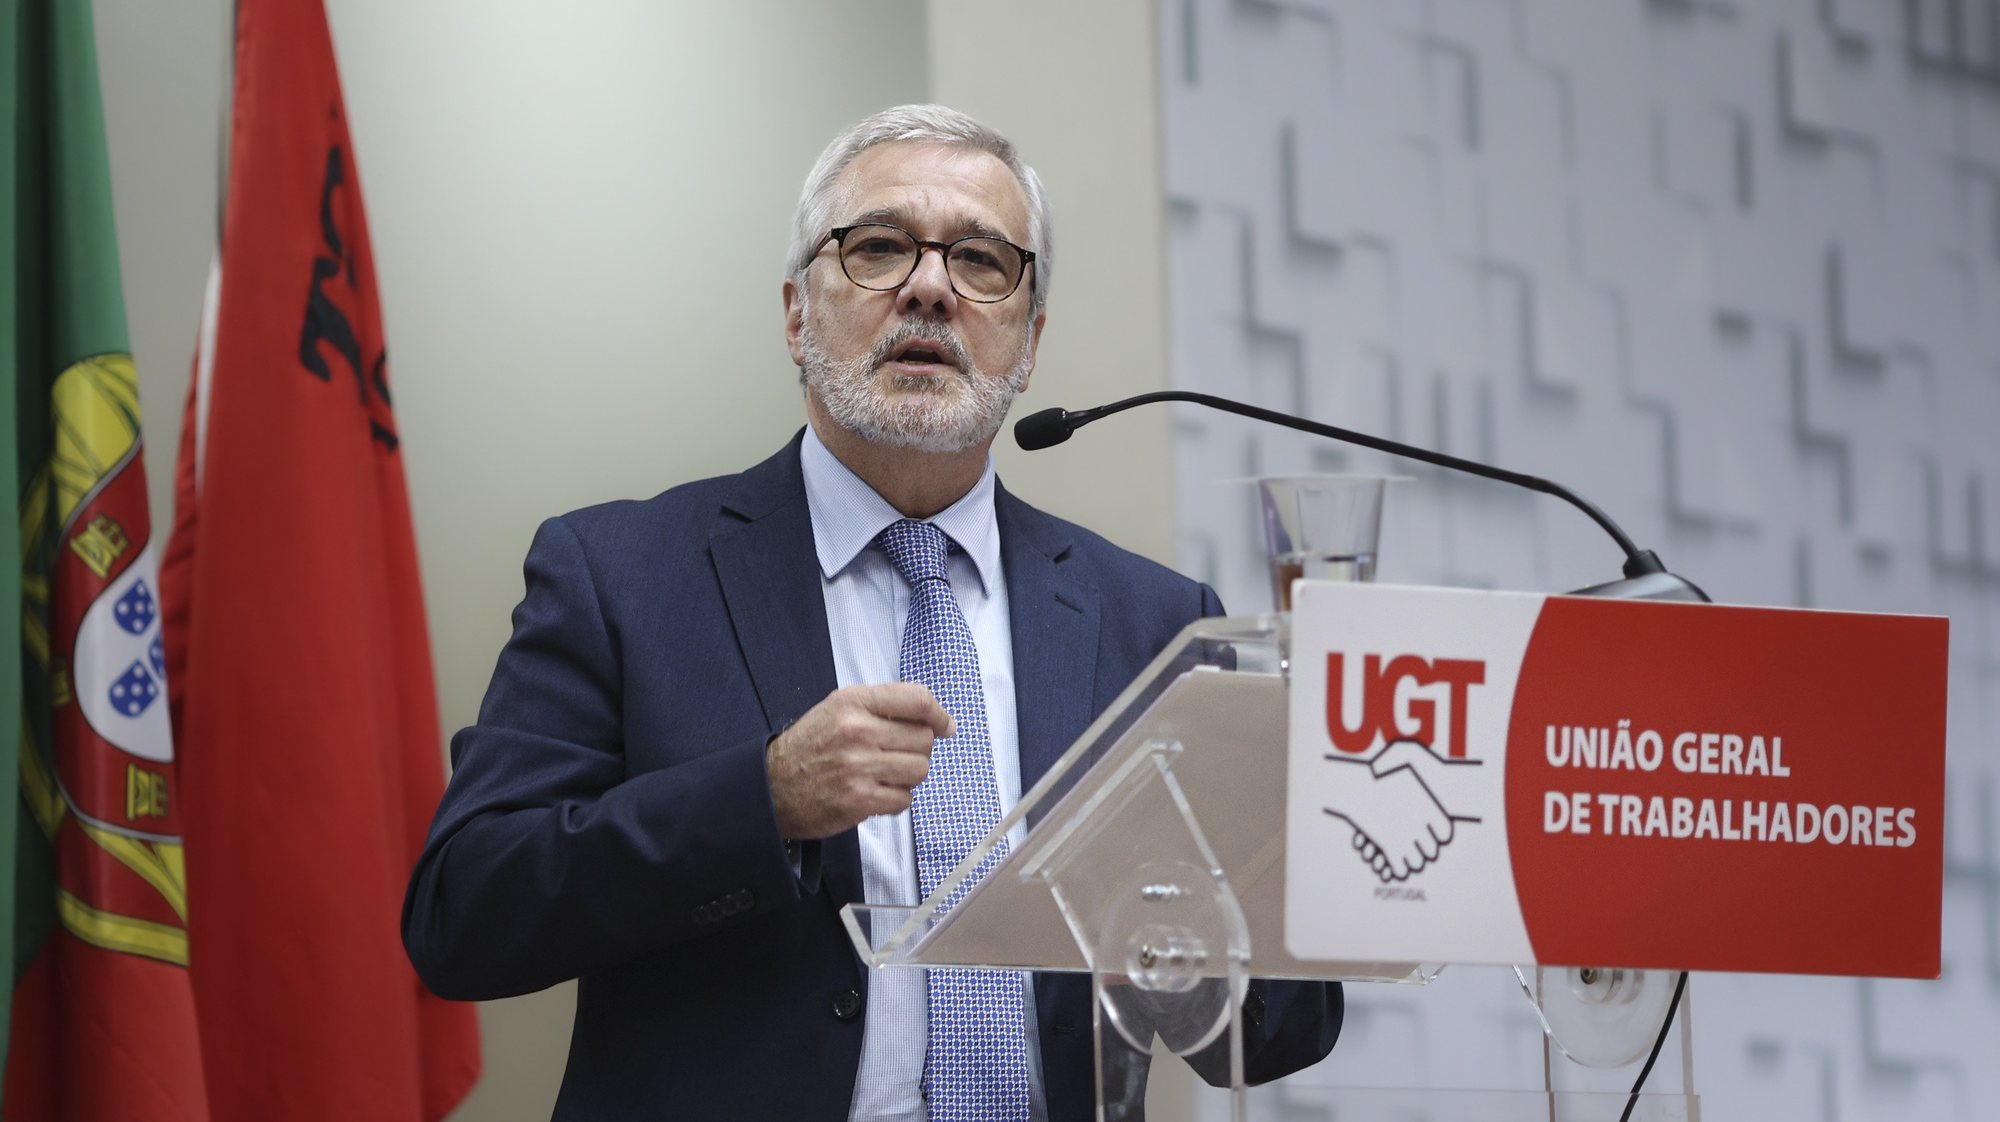 UGT defende que as metas de valorização salarial e de reforço da competitividade “não podem cair”